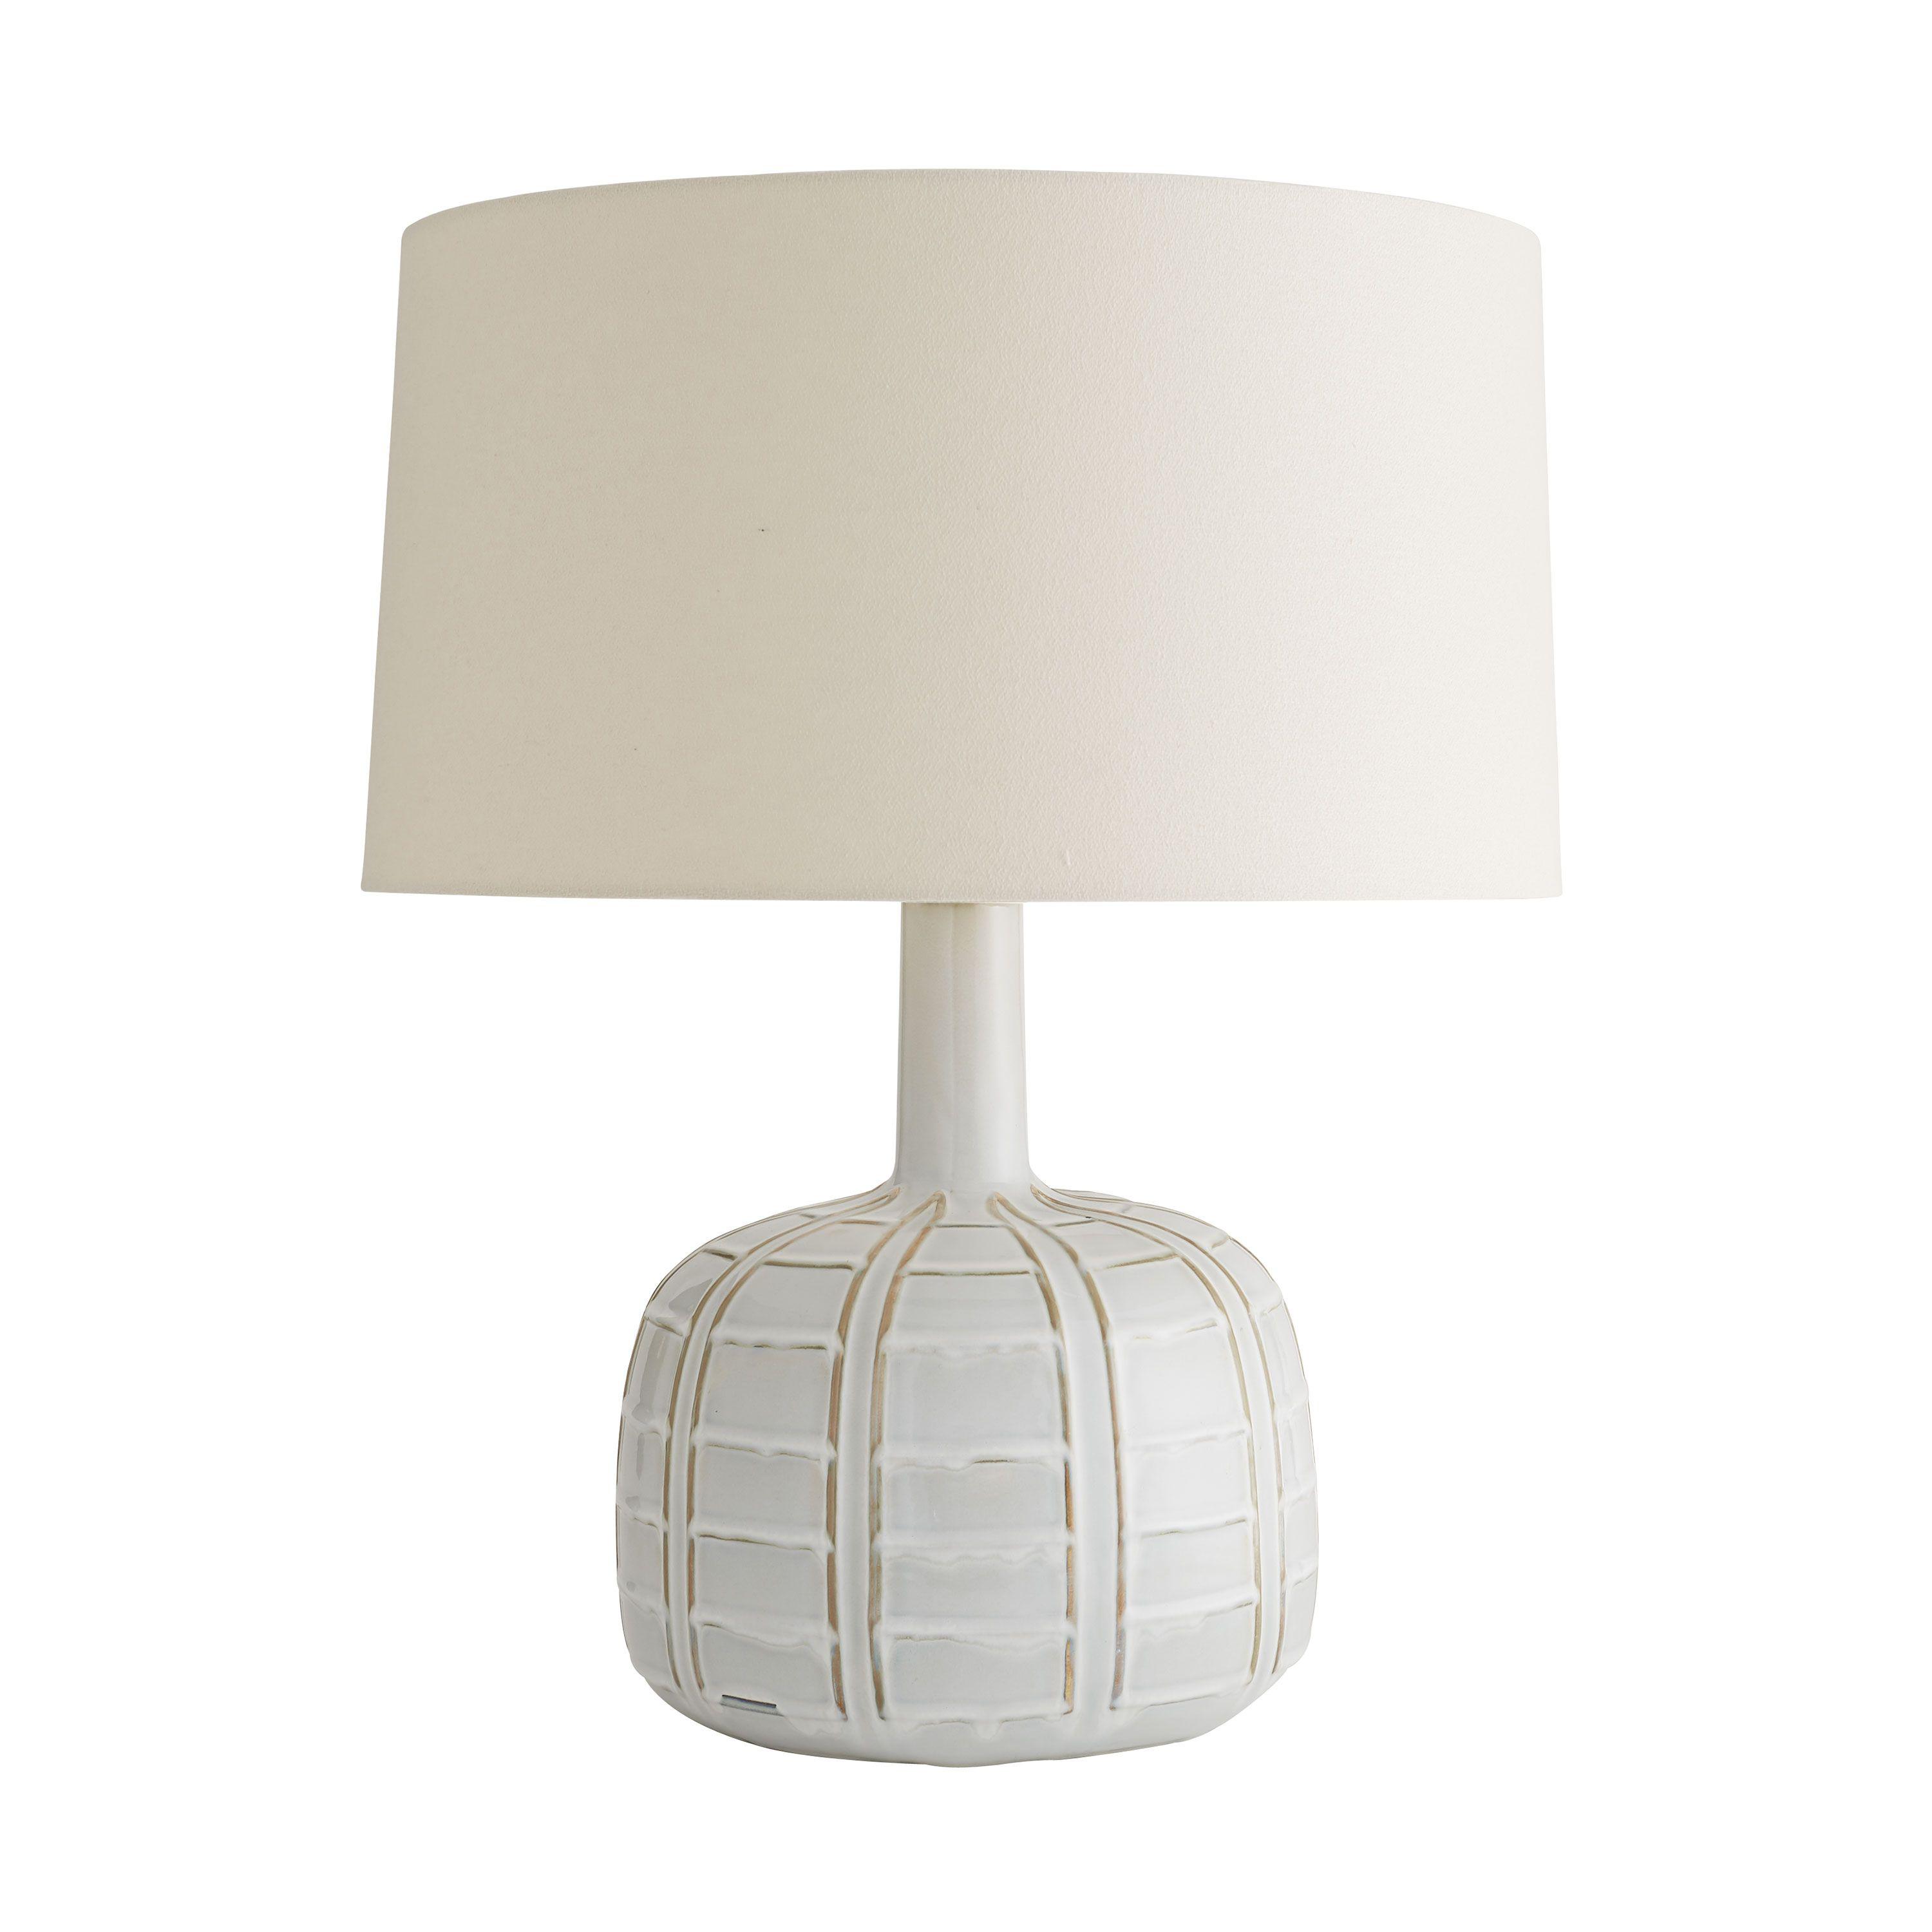 Купить Настольная лампа Erickson Lamp в интернет-магазине roooms.ru